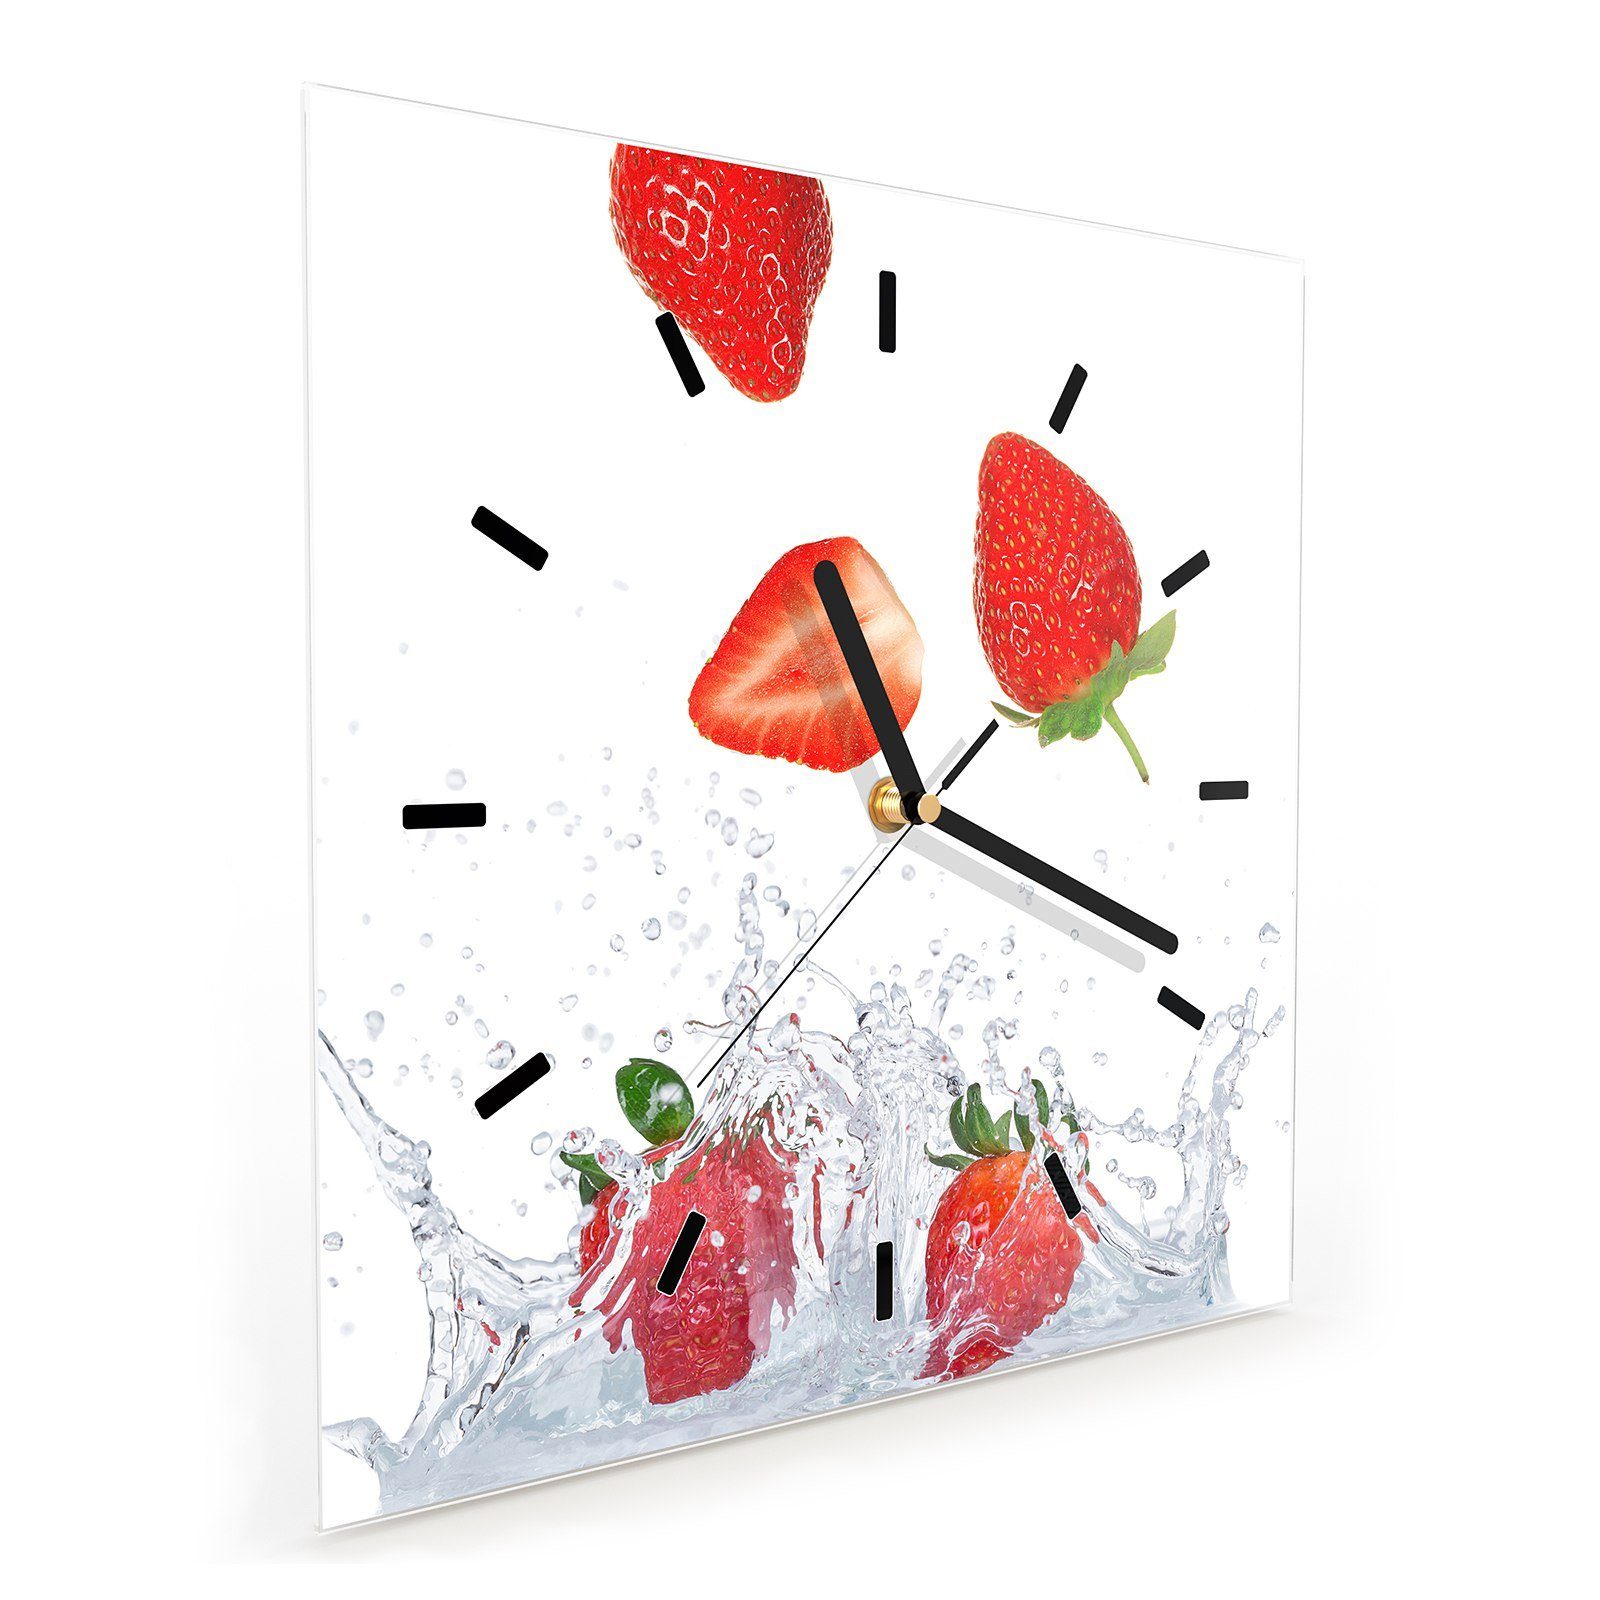 x mit fliegend 30 30 Wandkunst Größe Milch Wanduhr Wanduhr Glasuhr in Erdbeeren Motiv Primedeco cm